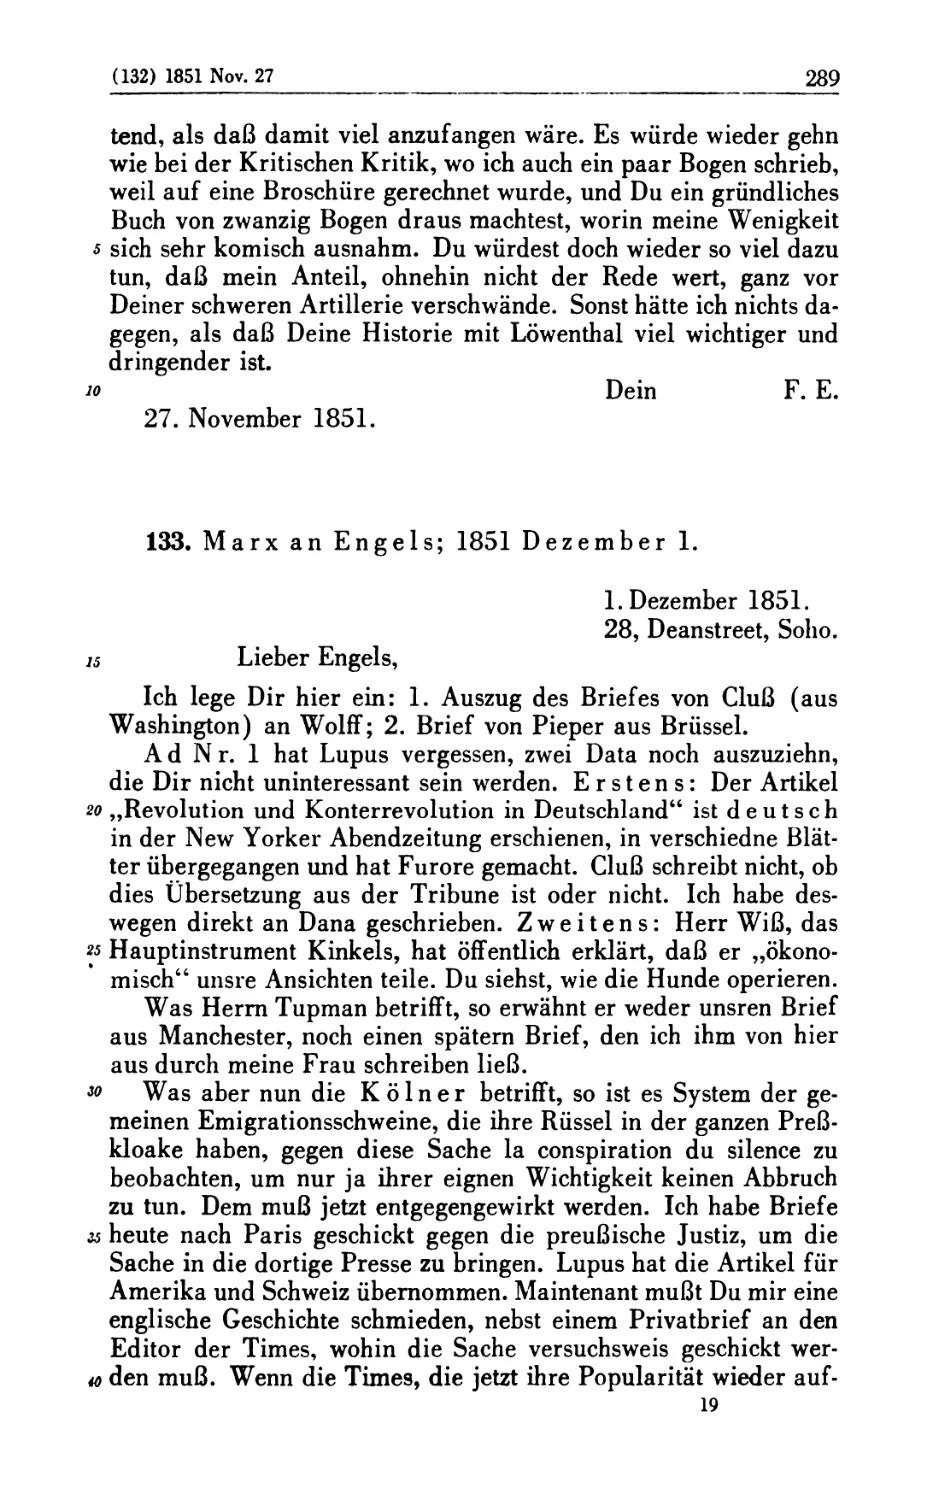 133. Marx an Engels; 1851 Dezember 1